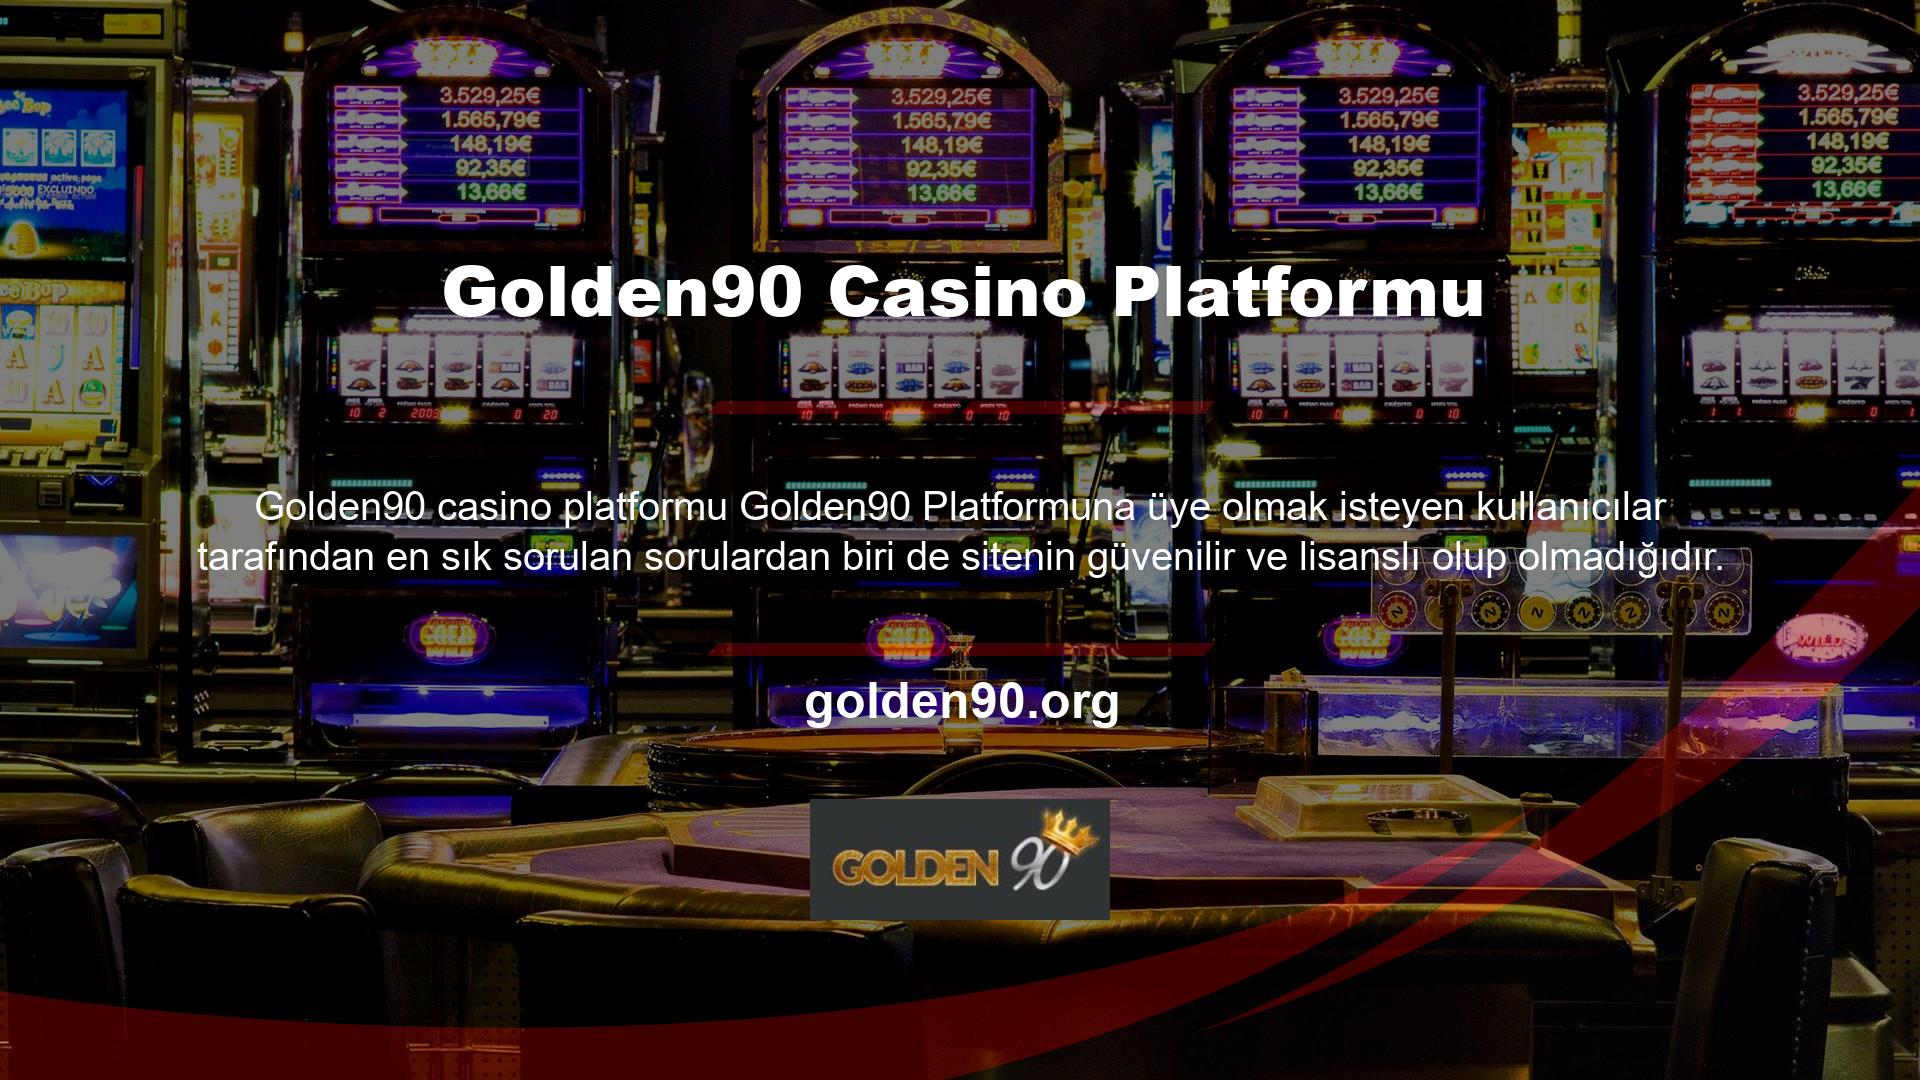 Golden90 platformuna üye olmak isteyen kullanıcıların en sık sorduğu sorulardan biri de sitenin güvenilir ve lisanslı olup olmadığıdır